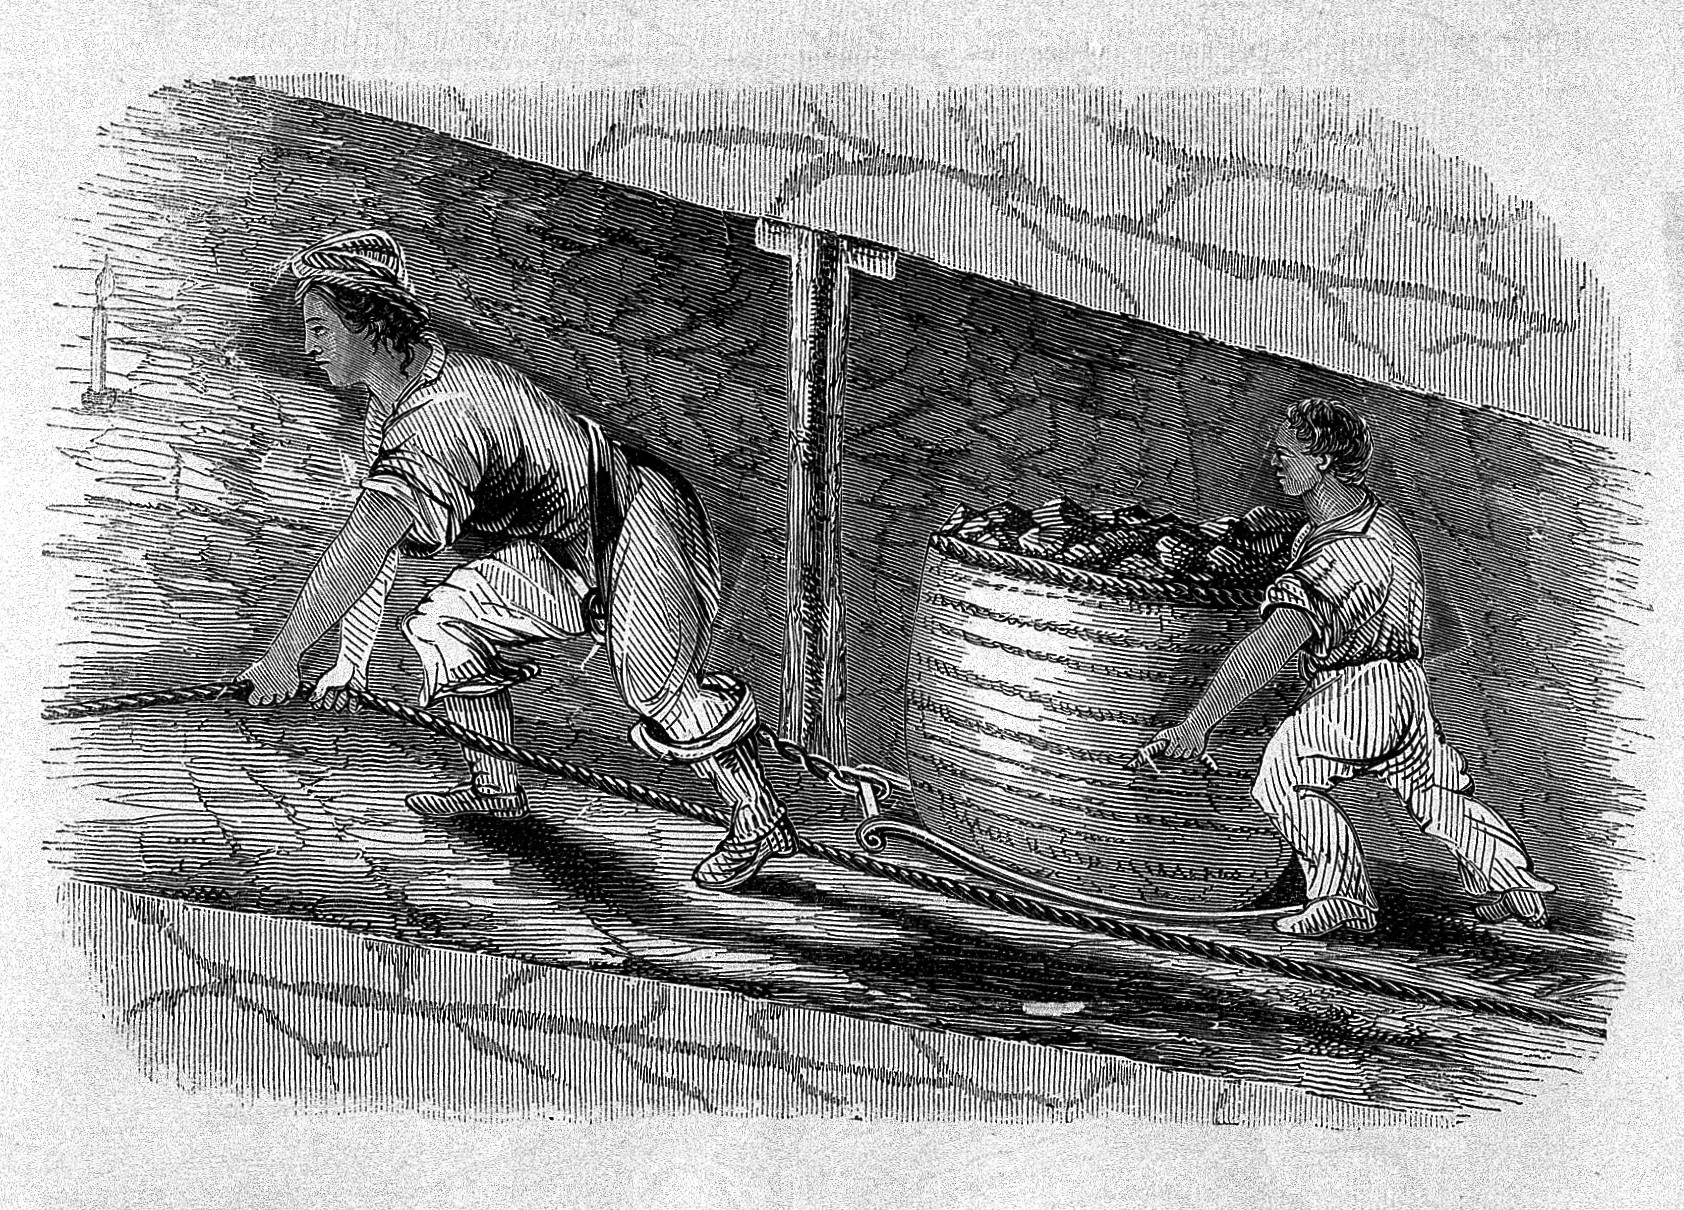 Child Labor Industrial Revolution Coal mine